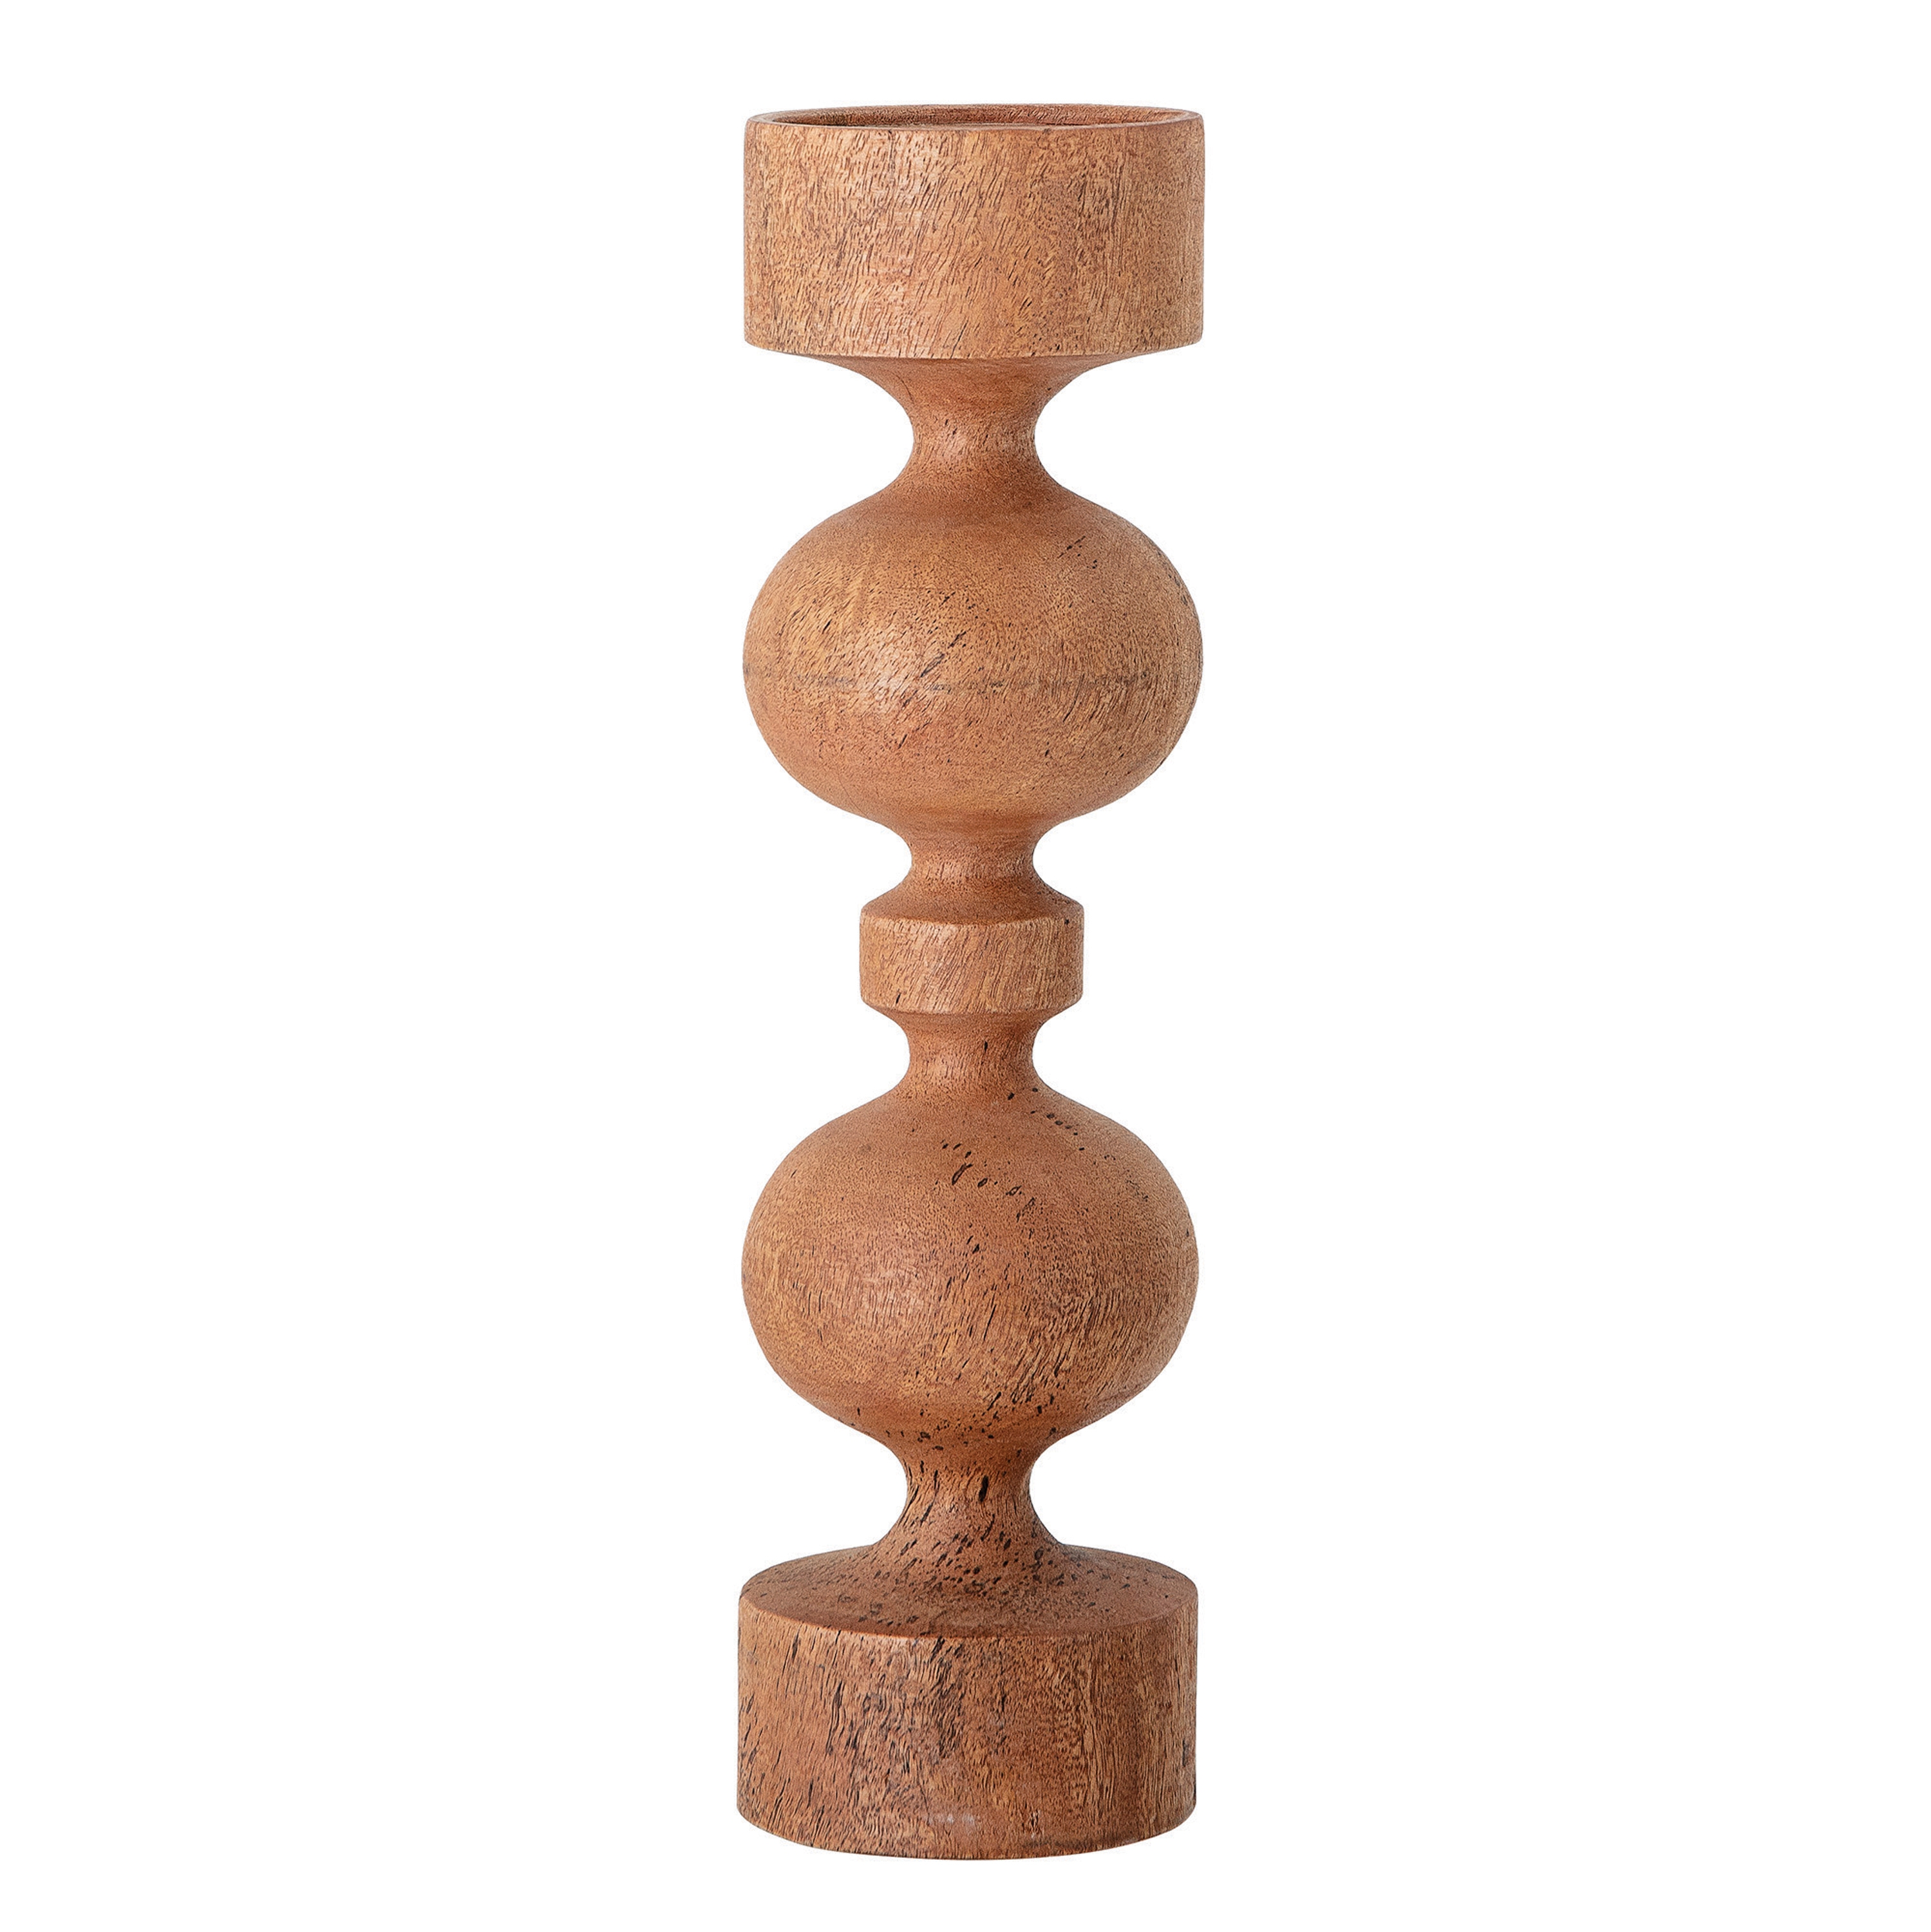 Carved Mango Wood Candle Holder, 18" - Image 0